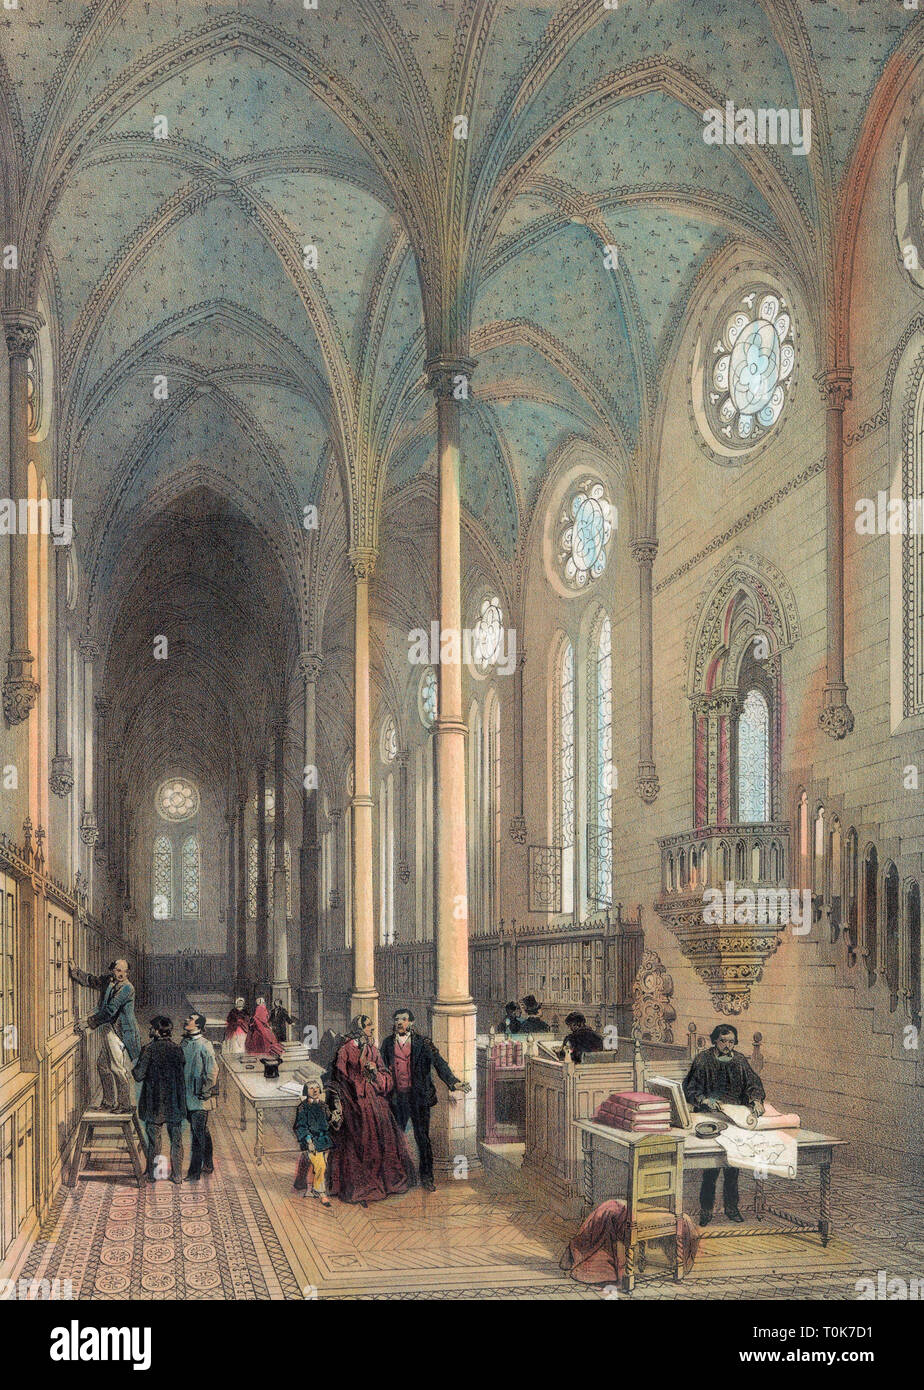 Mitte des 19. Jahrhunderts chromolithograph der Bibliothek des Musée des Arts et De - Ali, oder Museum für Kunst und Gewerbe, von denen einige in die Überreste der alten Klosterkirche von Saint-Martin-des-Champs, Paris, Frankreich untergebracht ist. Stockfoto